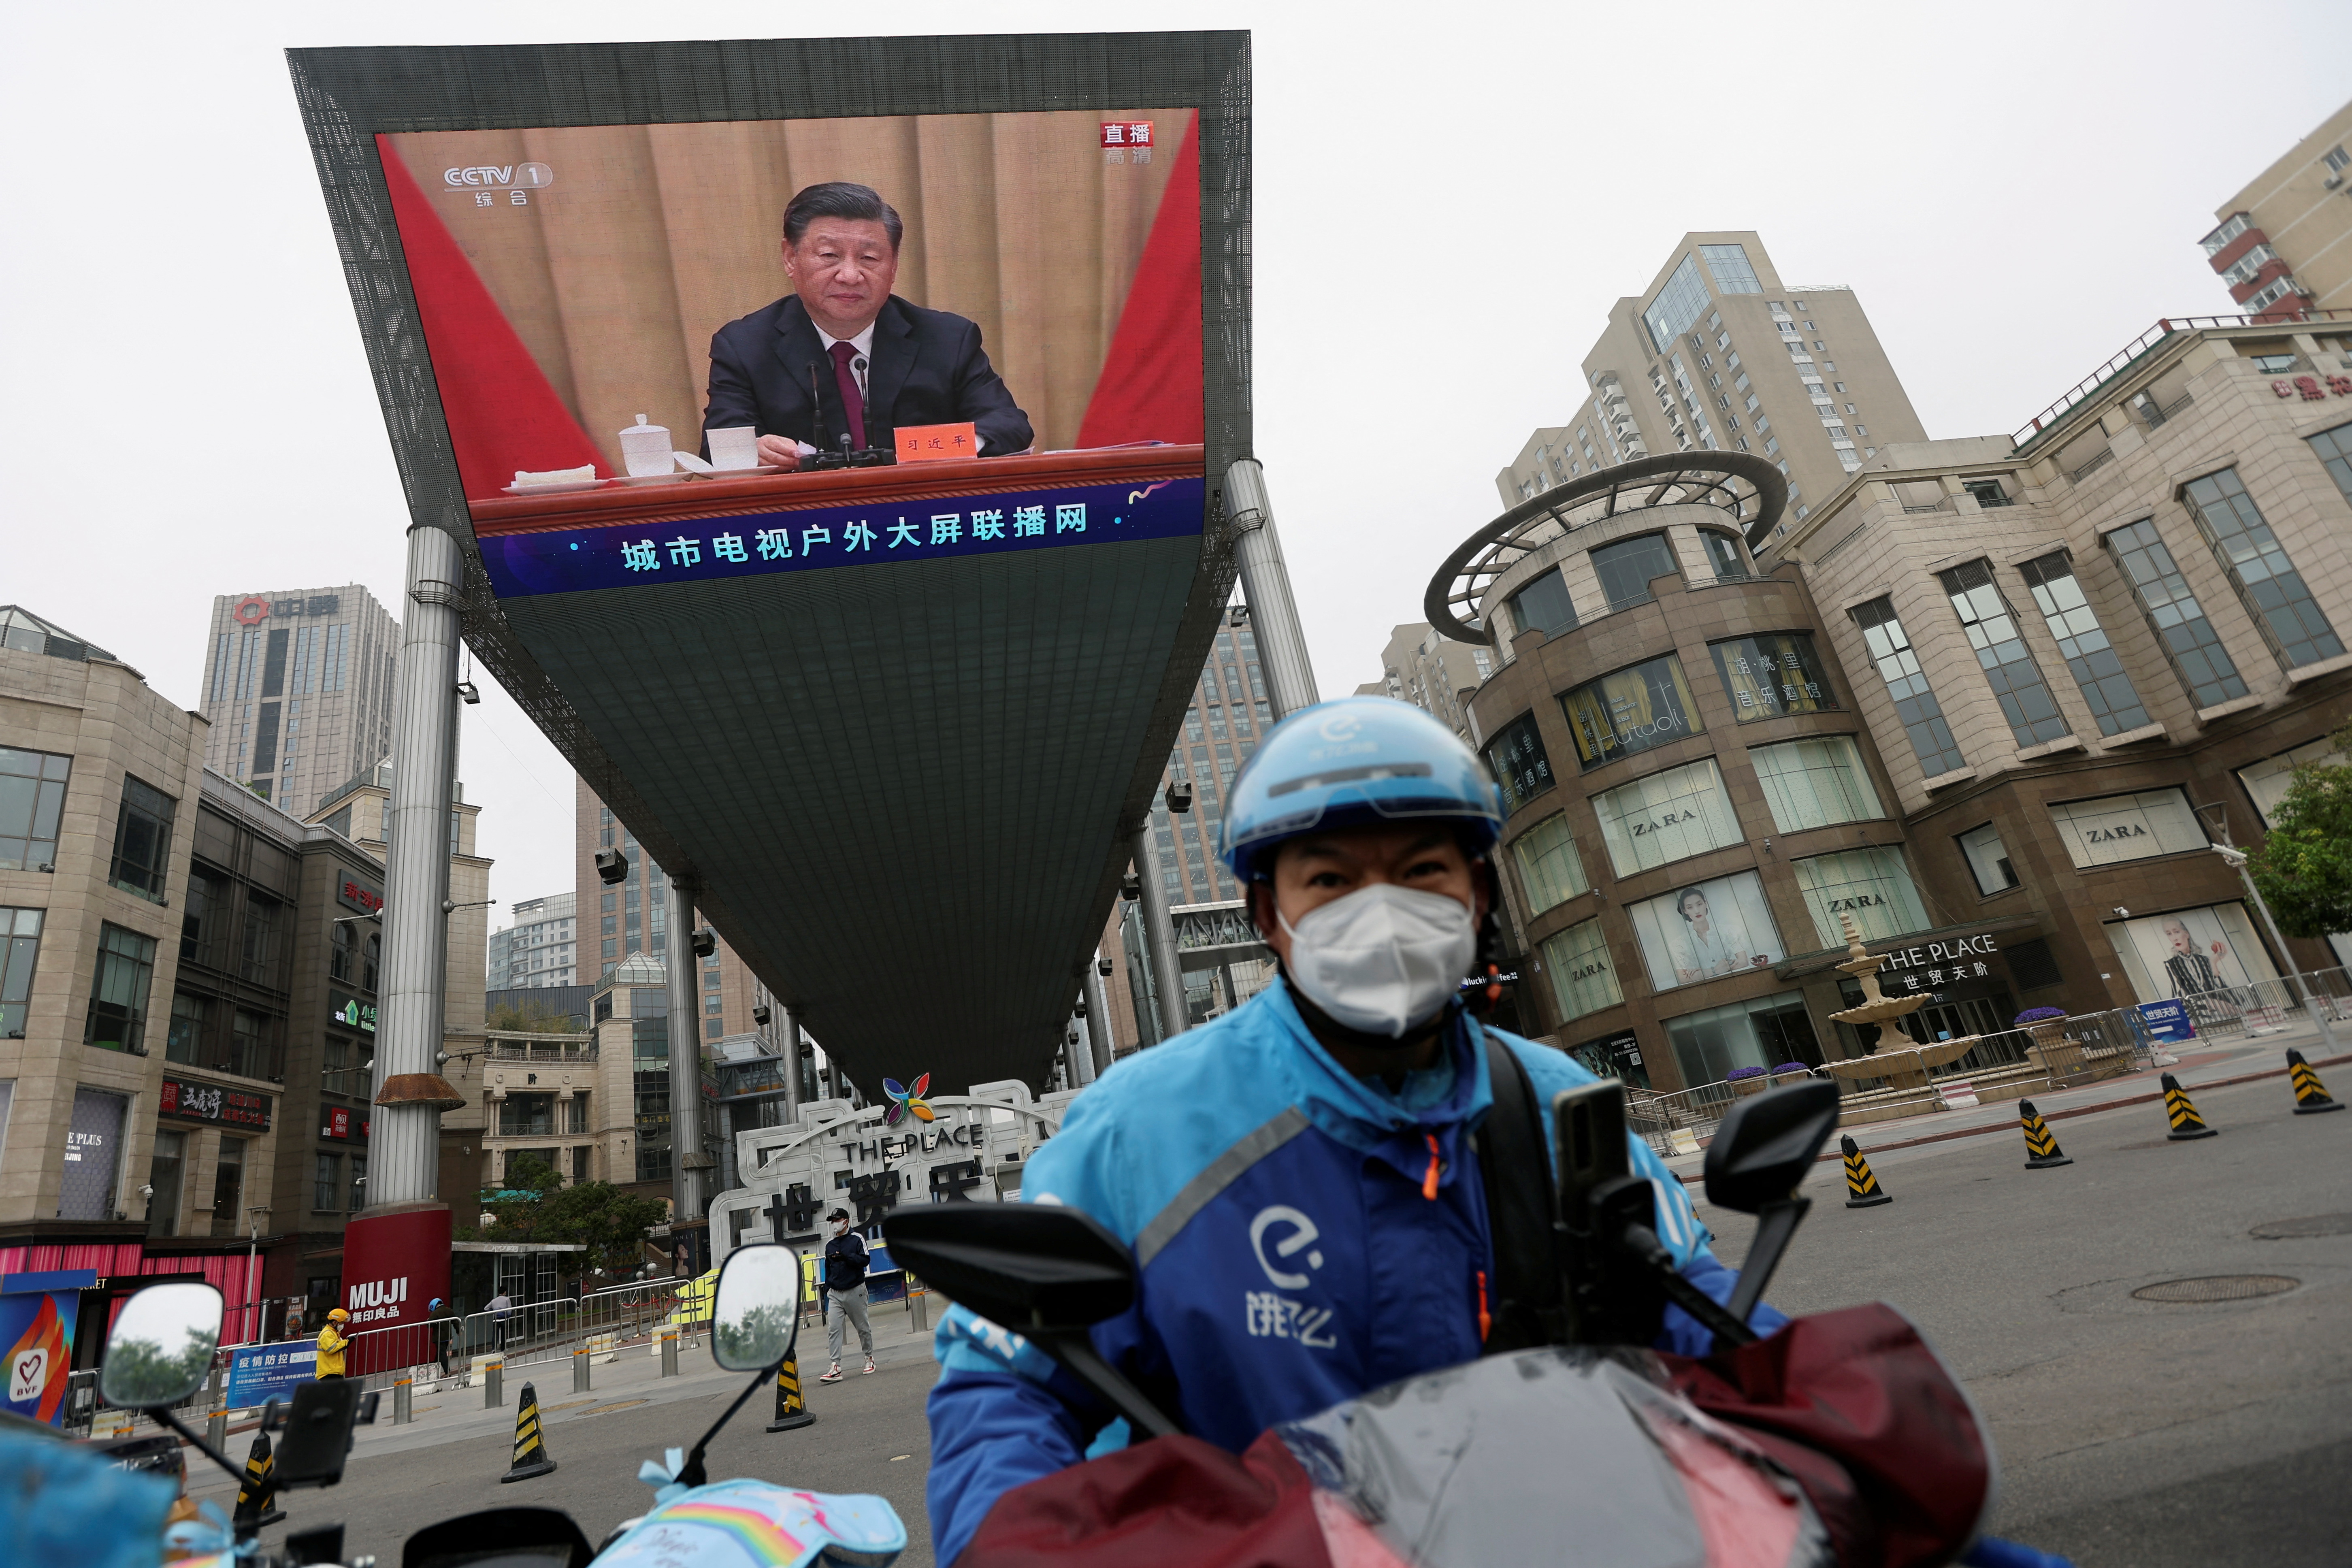 Un repartidor de Ele.me conduce su motocicleta cerca de una pantalla gigante que muestra al jefe del régimen chino Xi Jinping en un acto de celebración del centenario de la fundación de la Liga de la Juventud Comunista China, en Beijing (Reuters)